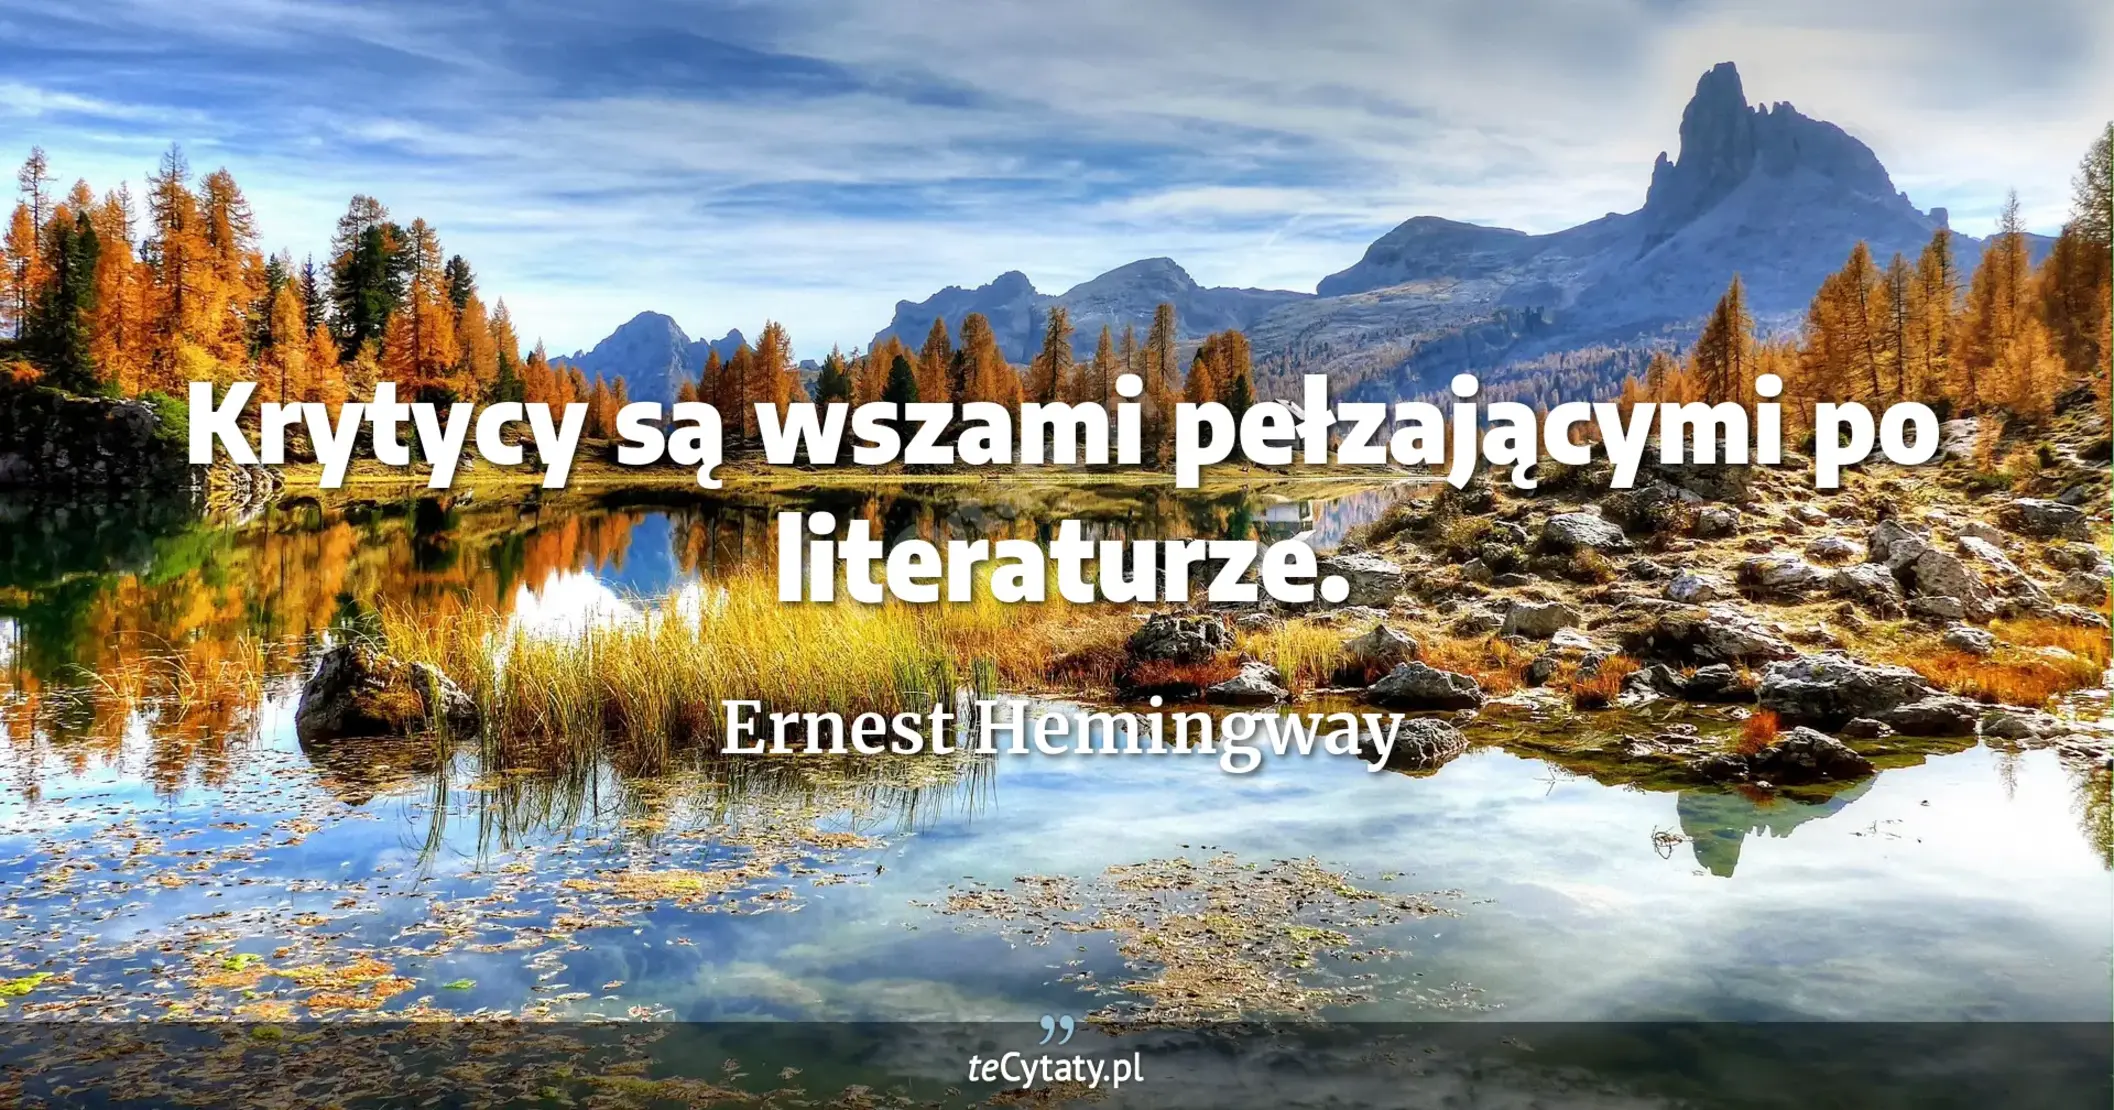 Krytycy są wszami pełzającymi po literaturze. - Ernest Hemingway